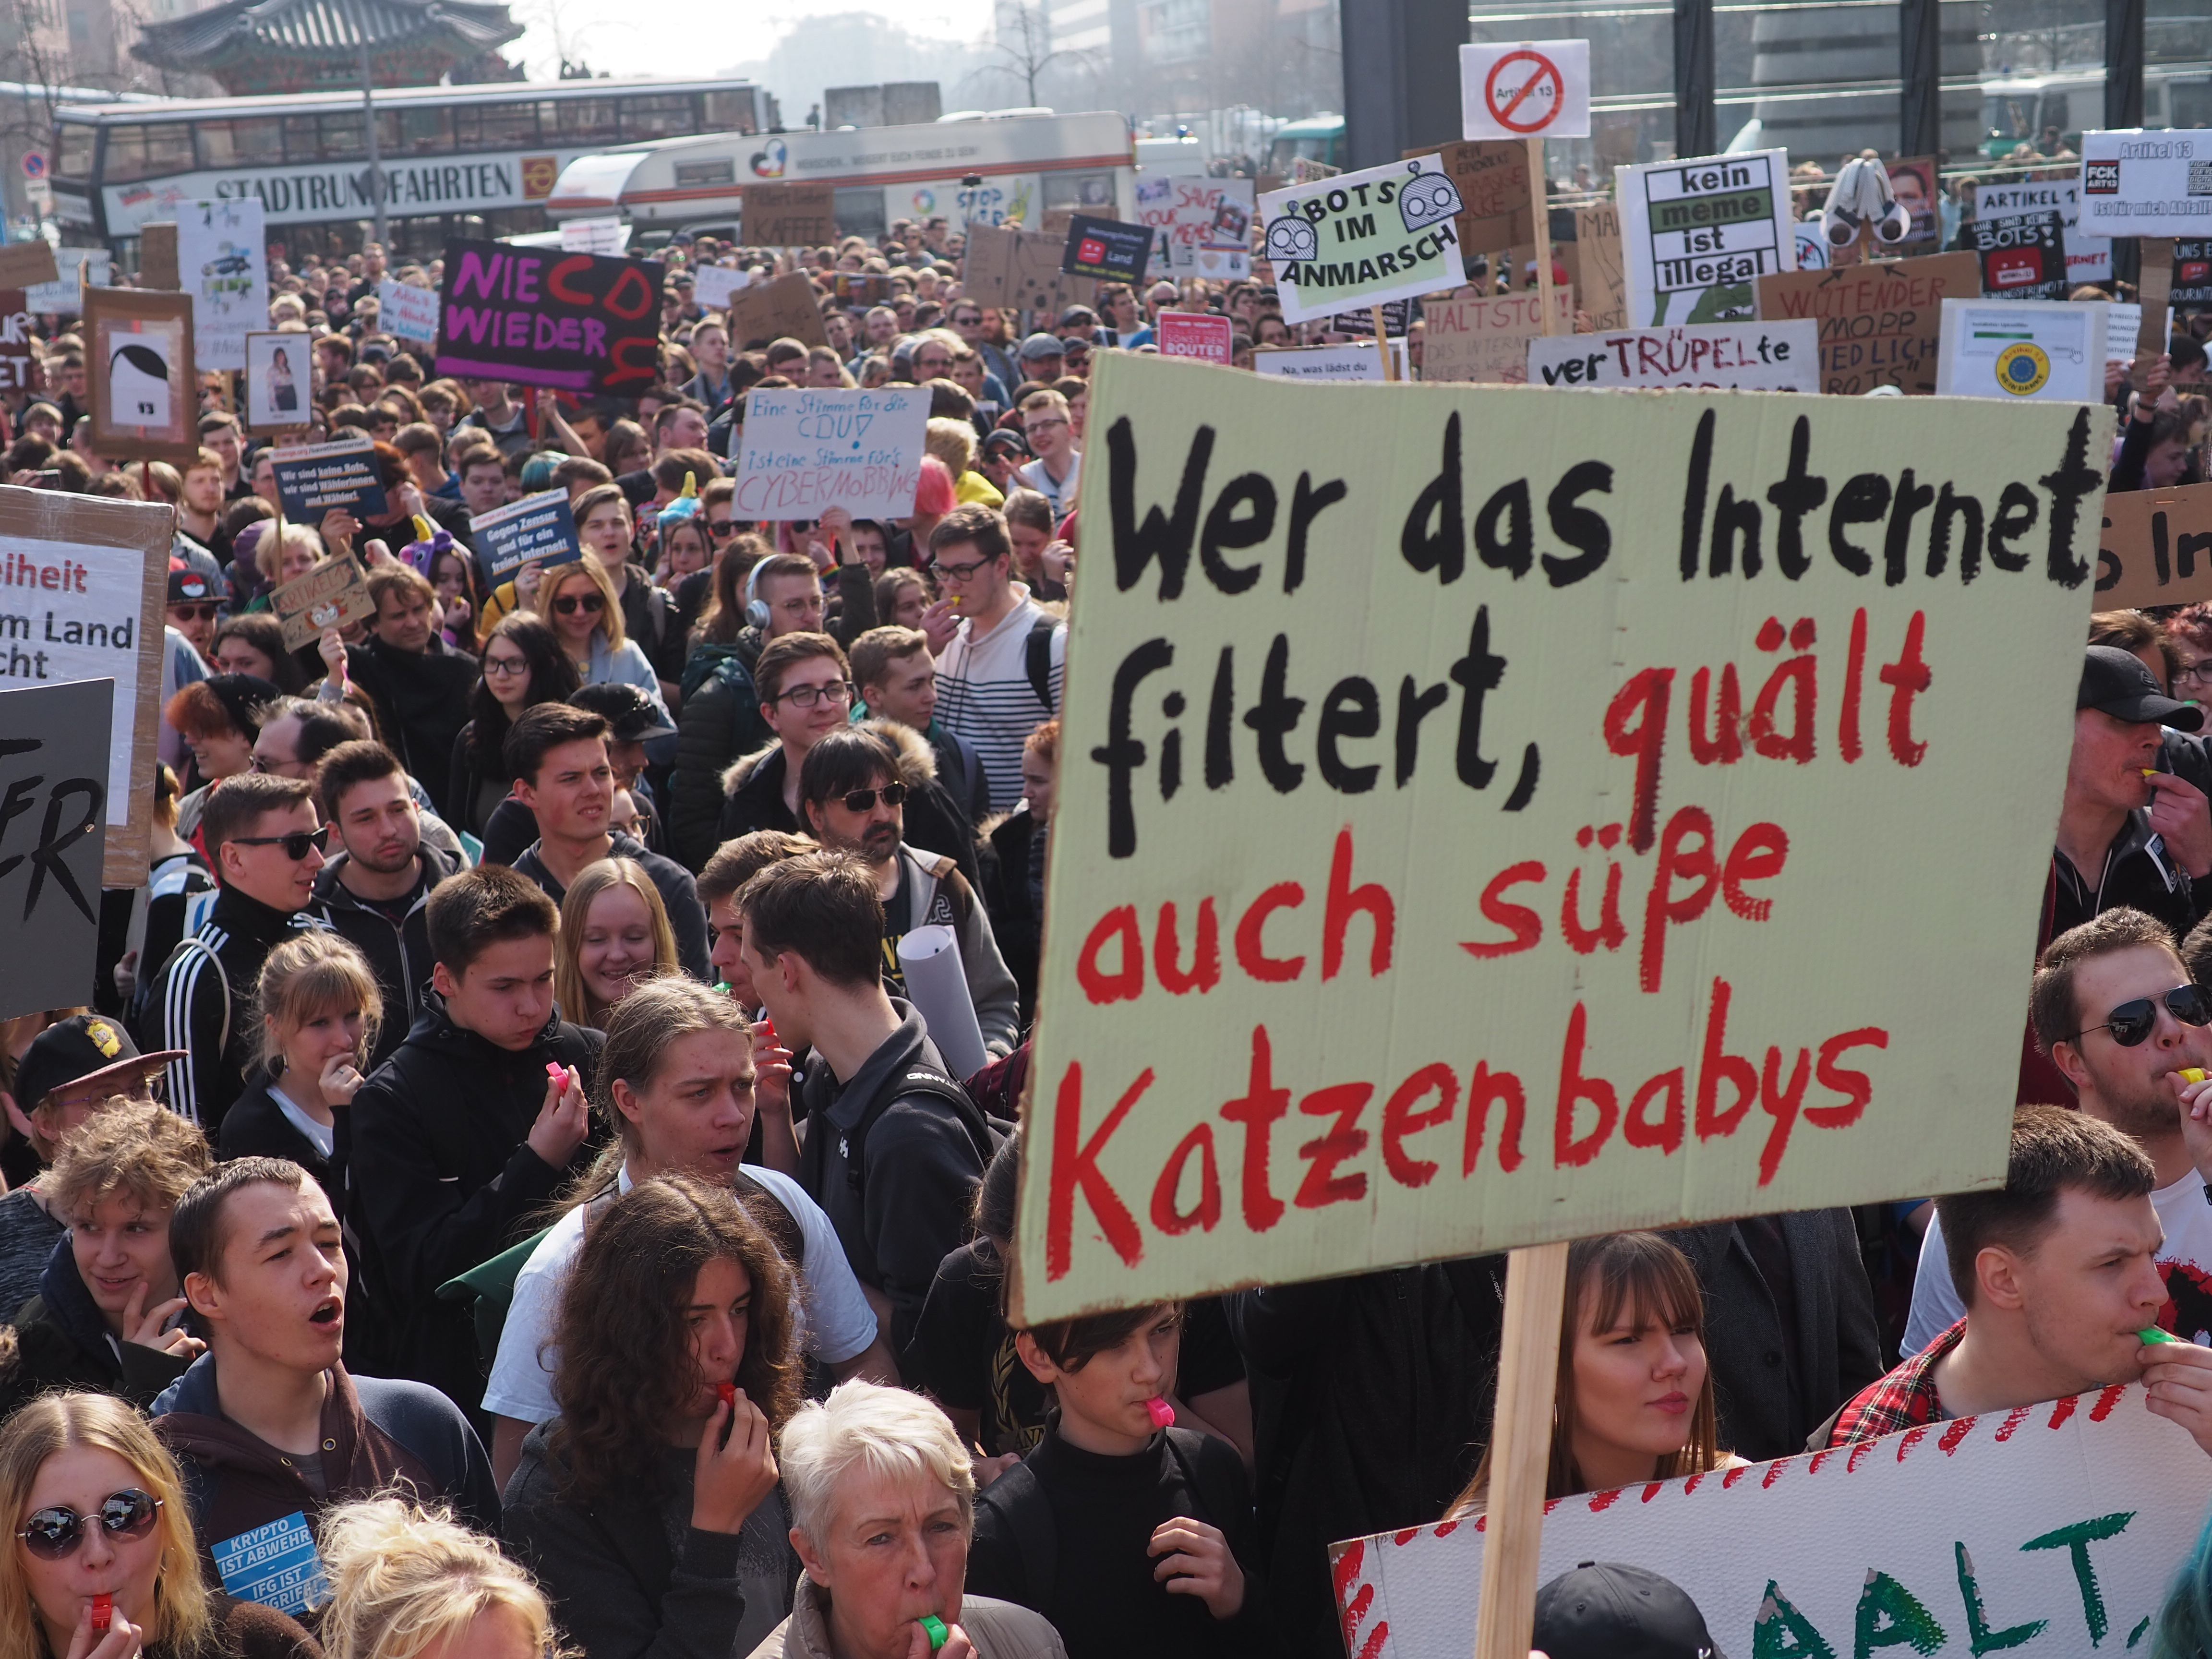 Protestschild mit Text : Wer das internet filtert, quält auch süße Katzenbabys